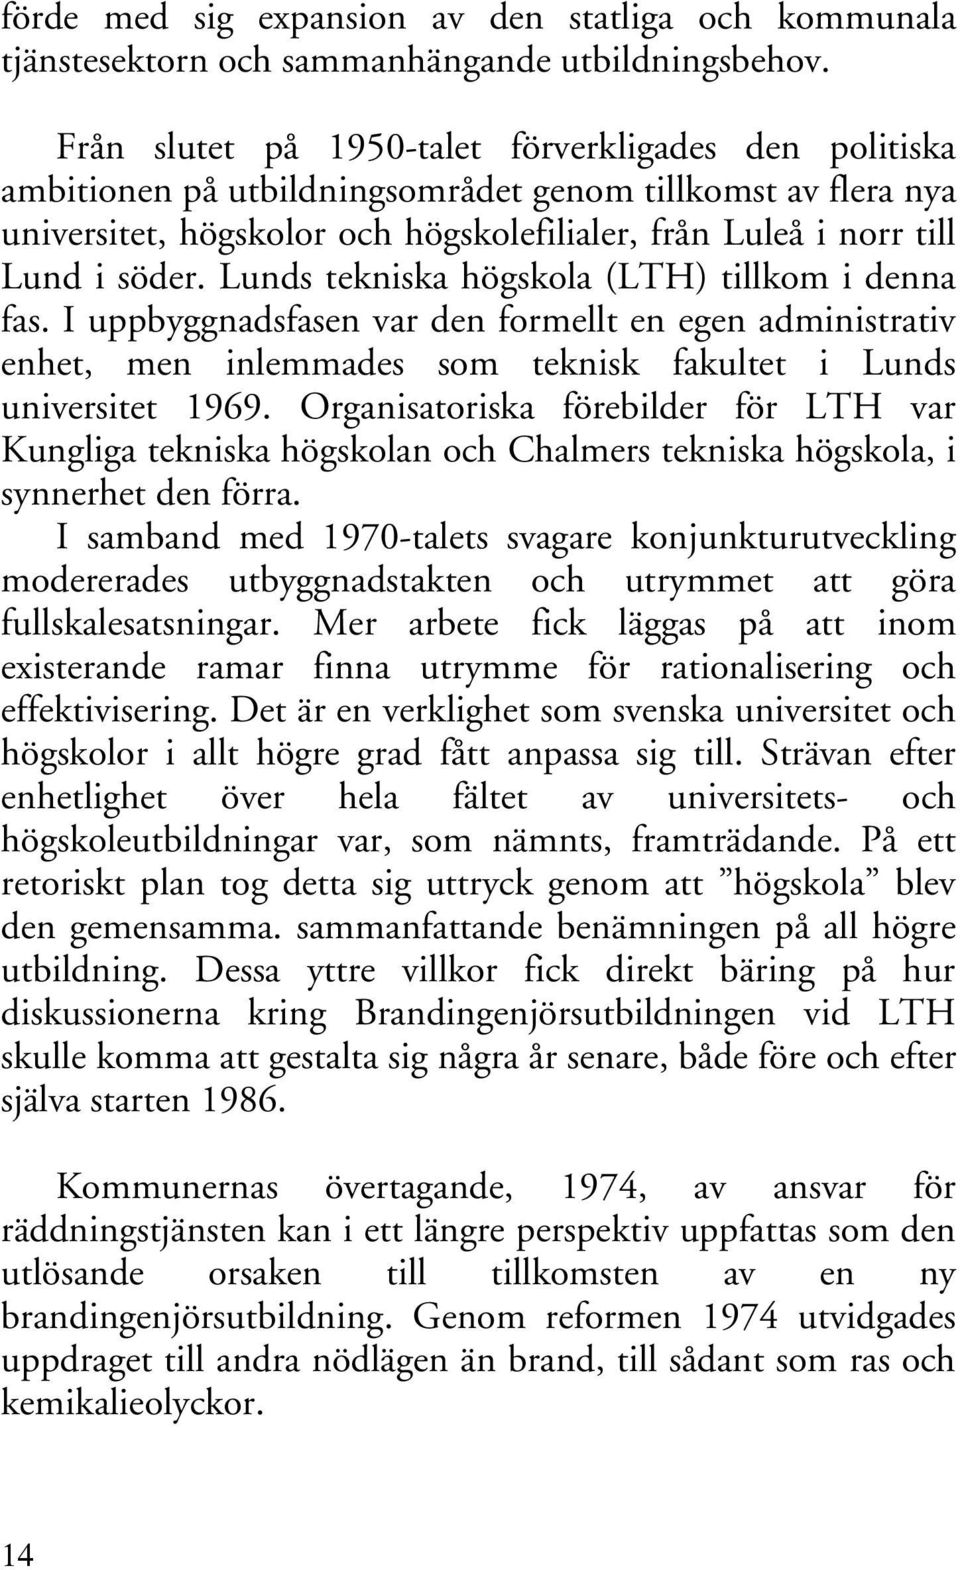 Lunds tekniska högskola (LTH) tillkom i denna fas. I uppbyggnadsfasen var den formellt en egen administrativ enhet, men inlemmades som teknisk fakultet i Lunds universitet 1969.